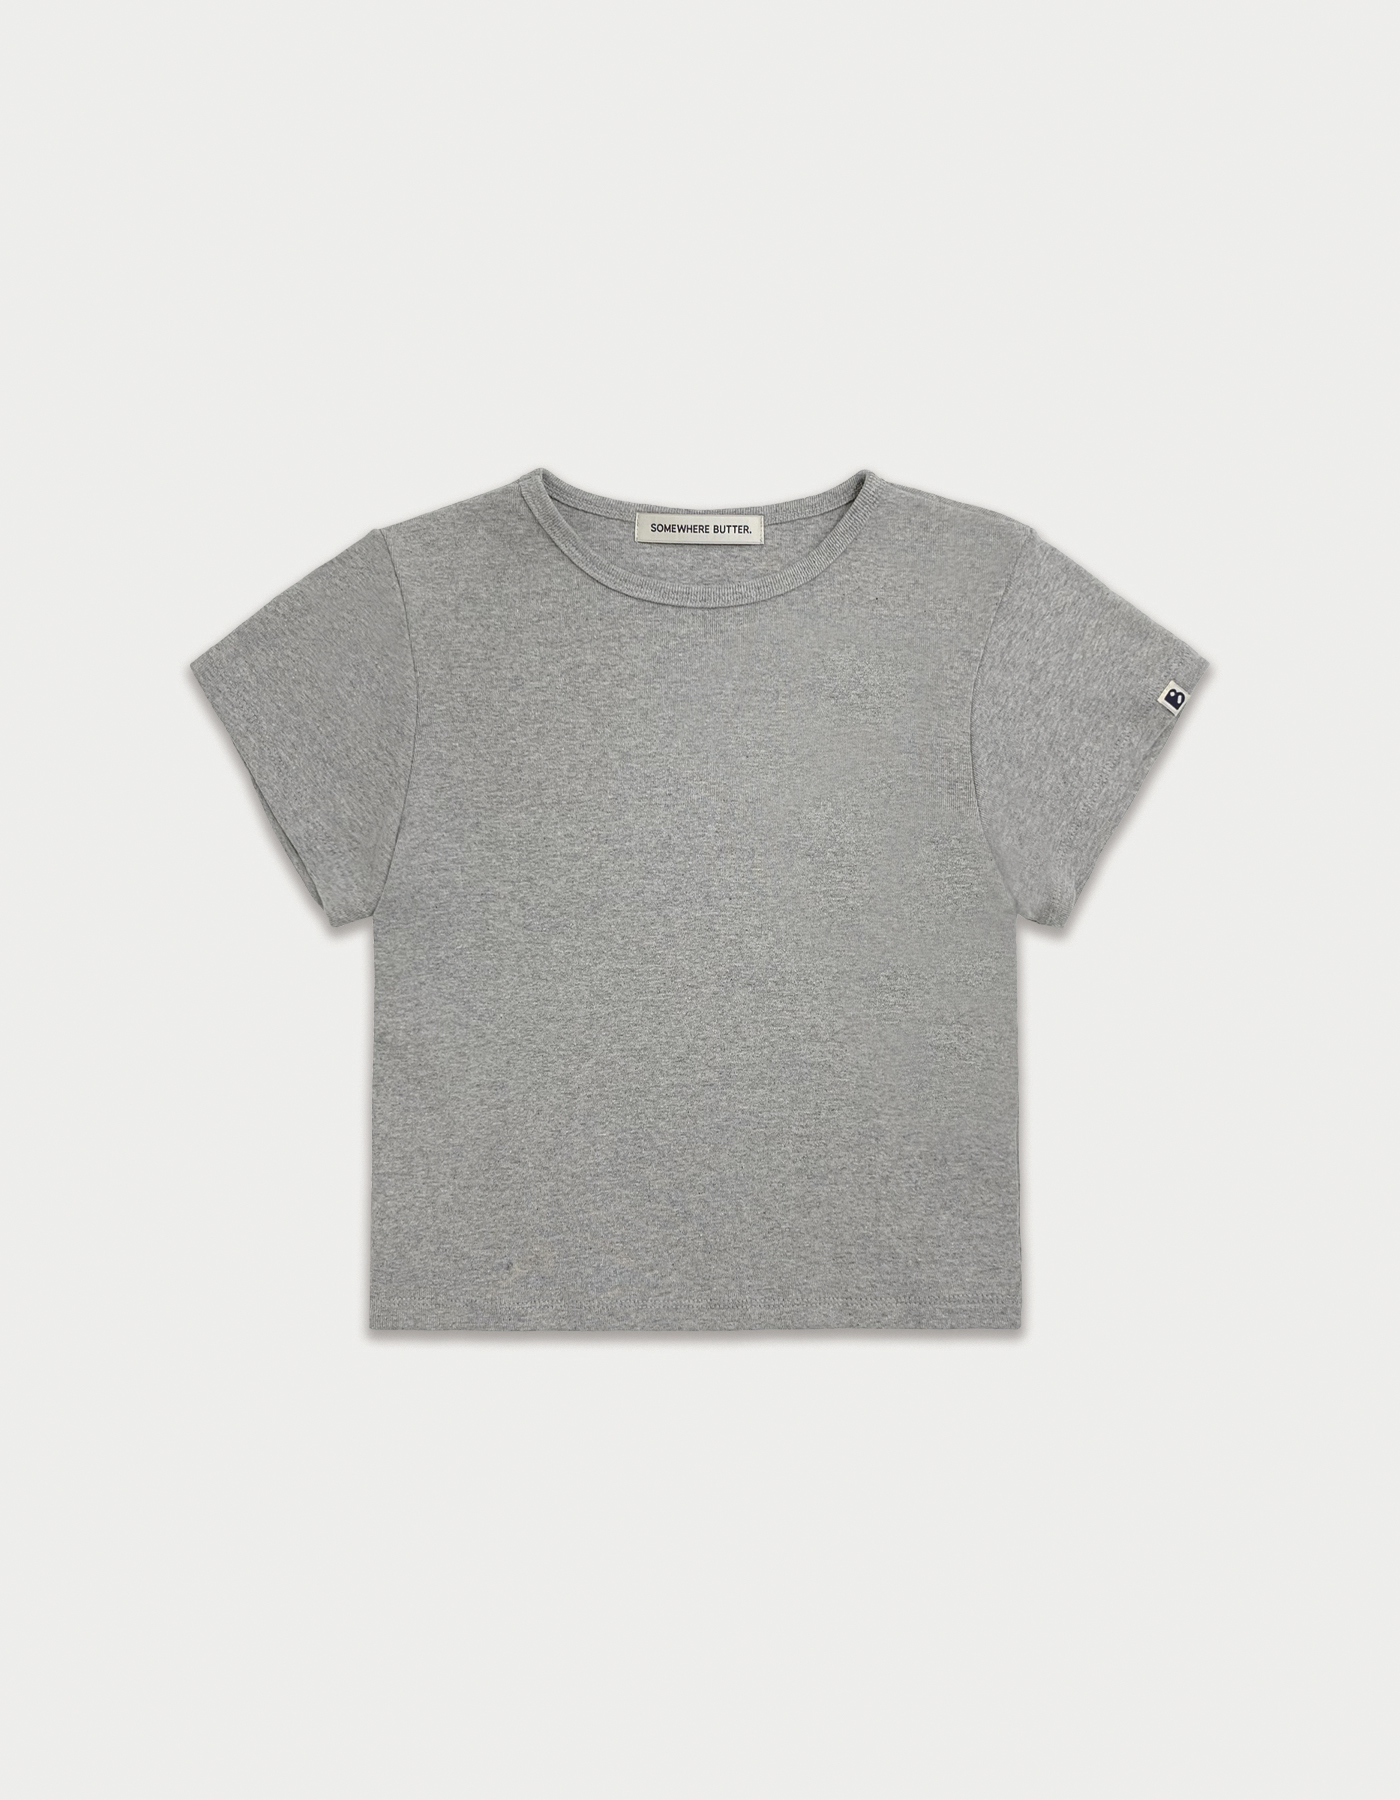 Essential clean top - grey